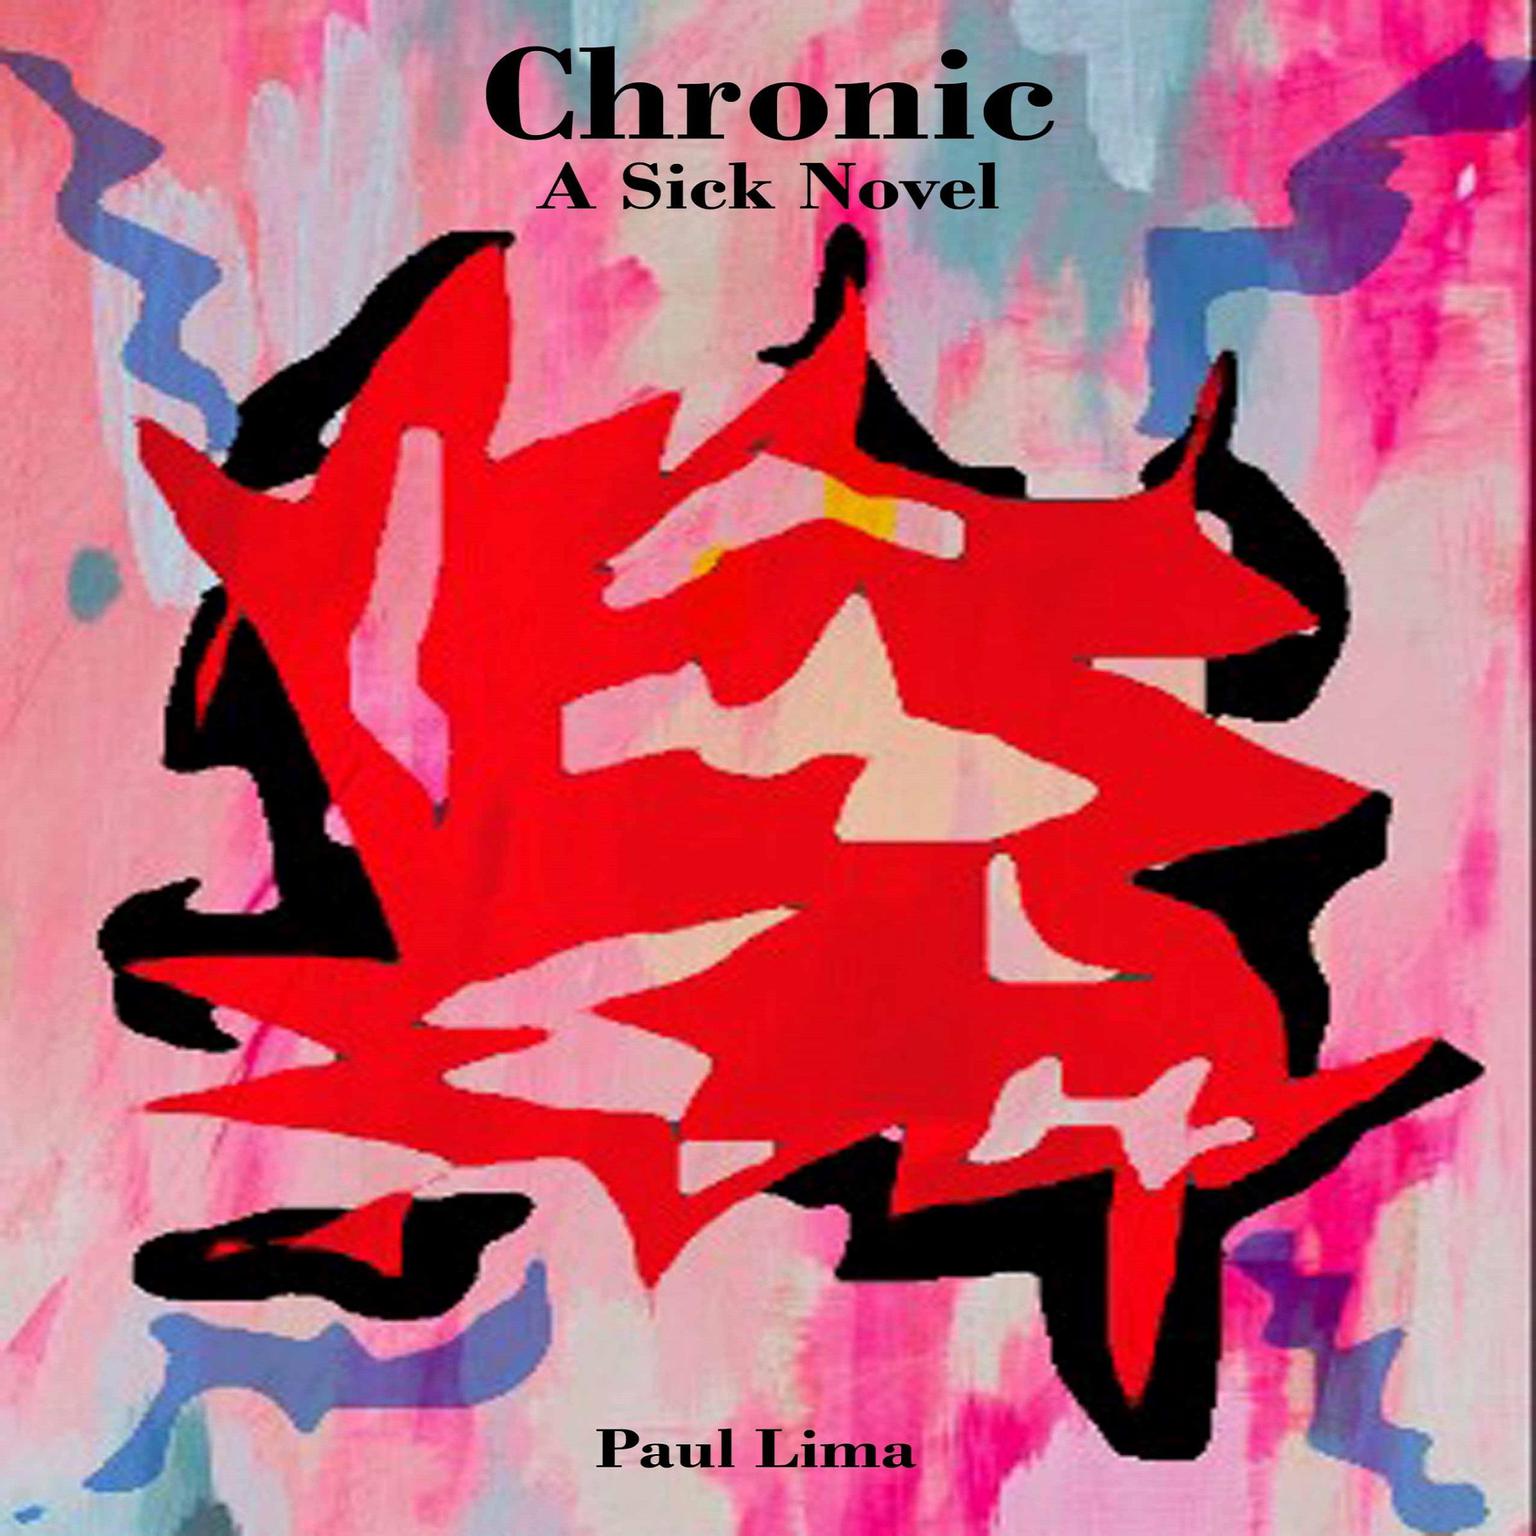 Chronic: A Sick Novel Audiobook, by Paul Lima